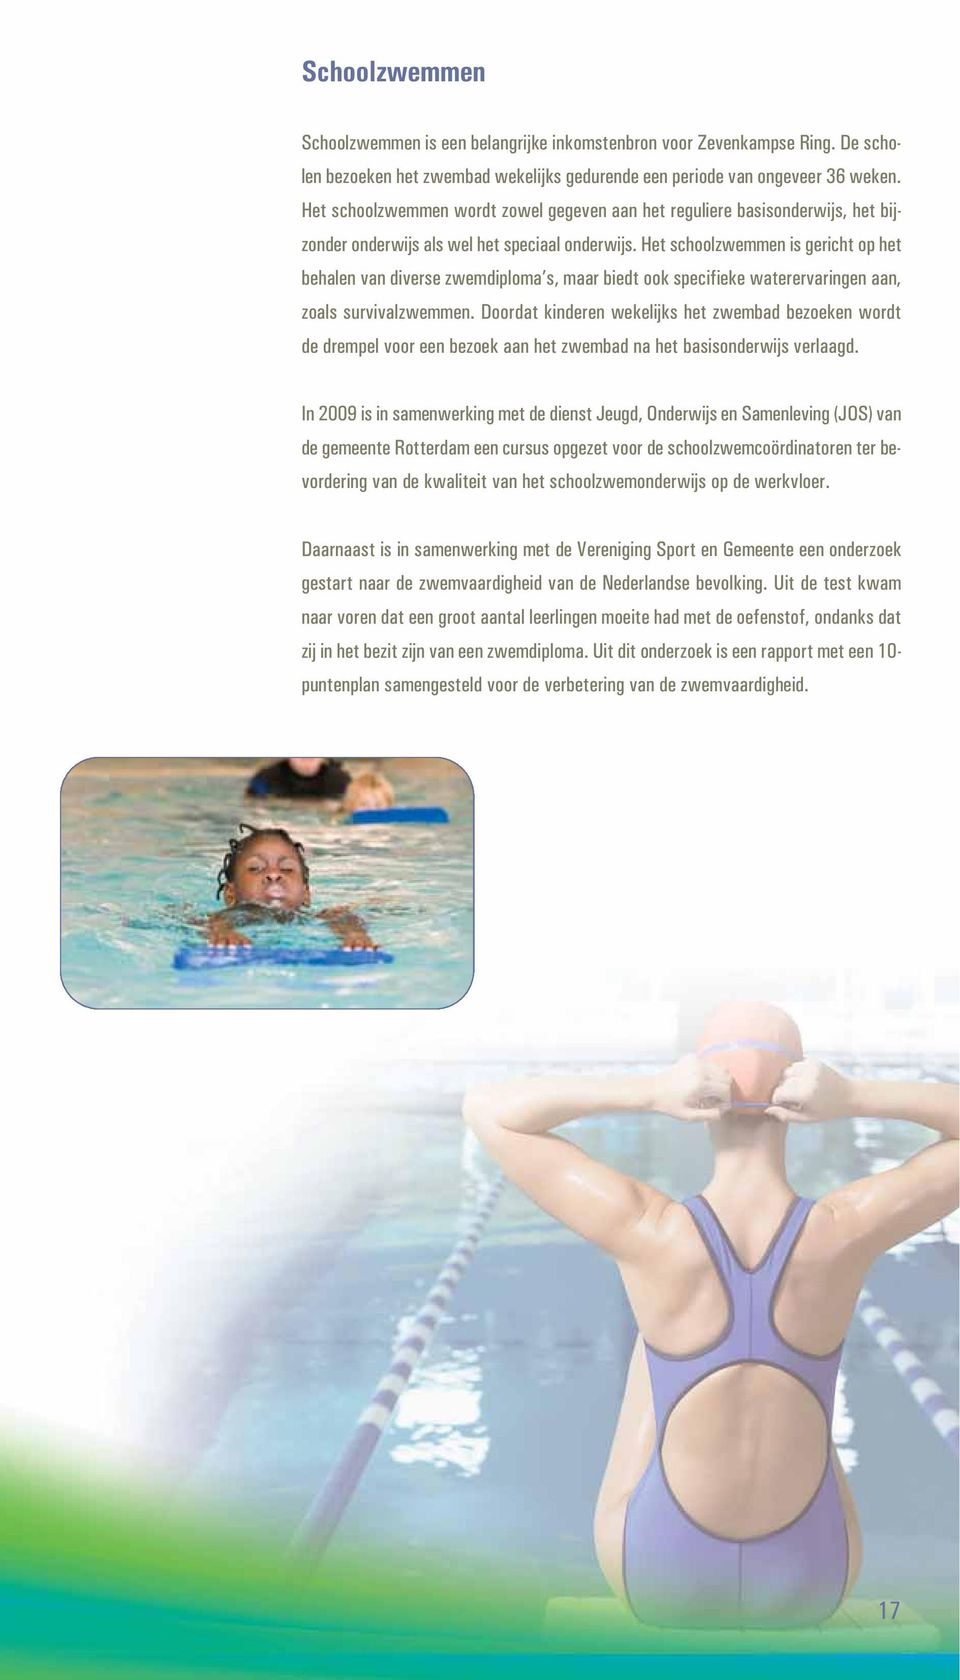 Het schoolzwemmen is gericht op het behalen van diverse zwemdiploma s, maar biedt ook specifieke waterervaringen aan, zoals survivalzwemmen.